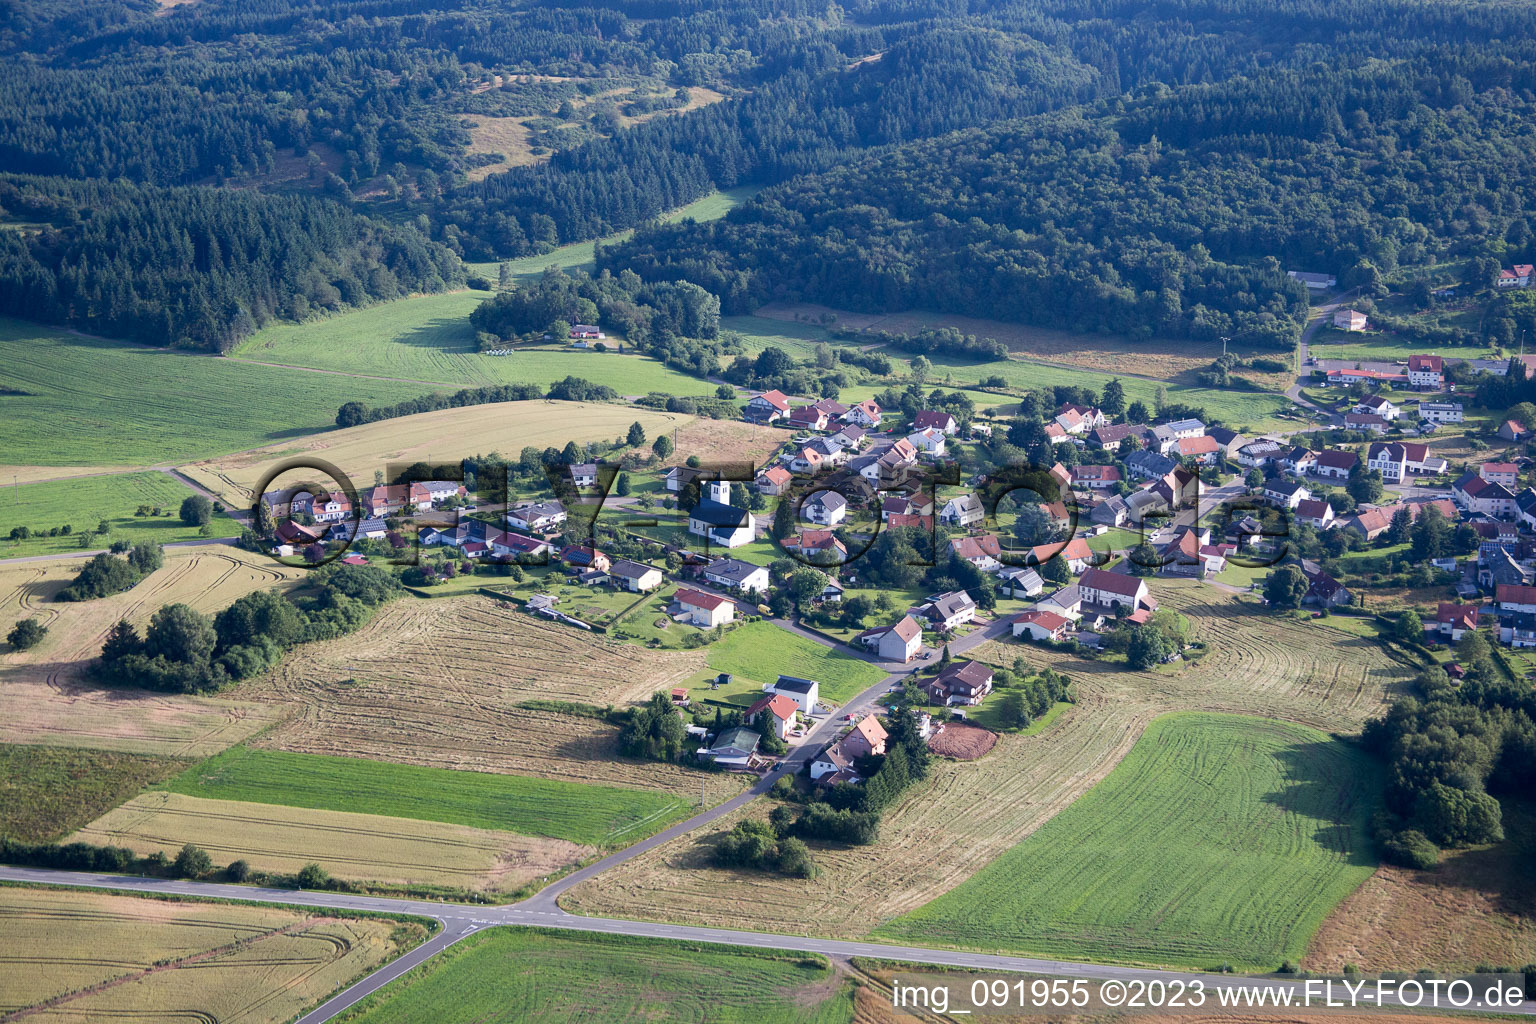 Luftbild von Dorf - Ansicht am Rande von landwirtschaftlichen Feldern und Nutzflächen in Reitscheid im Bundesland Saarland, Deutschland